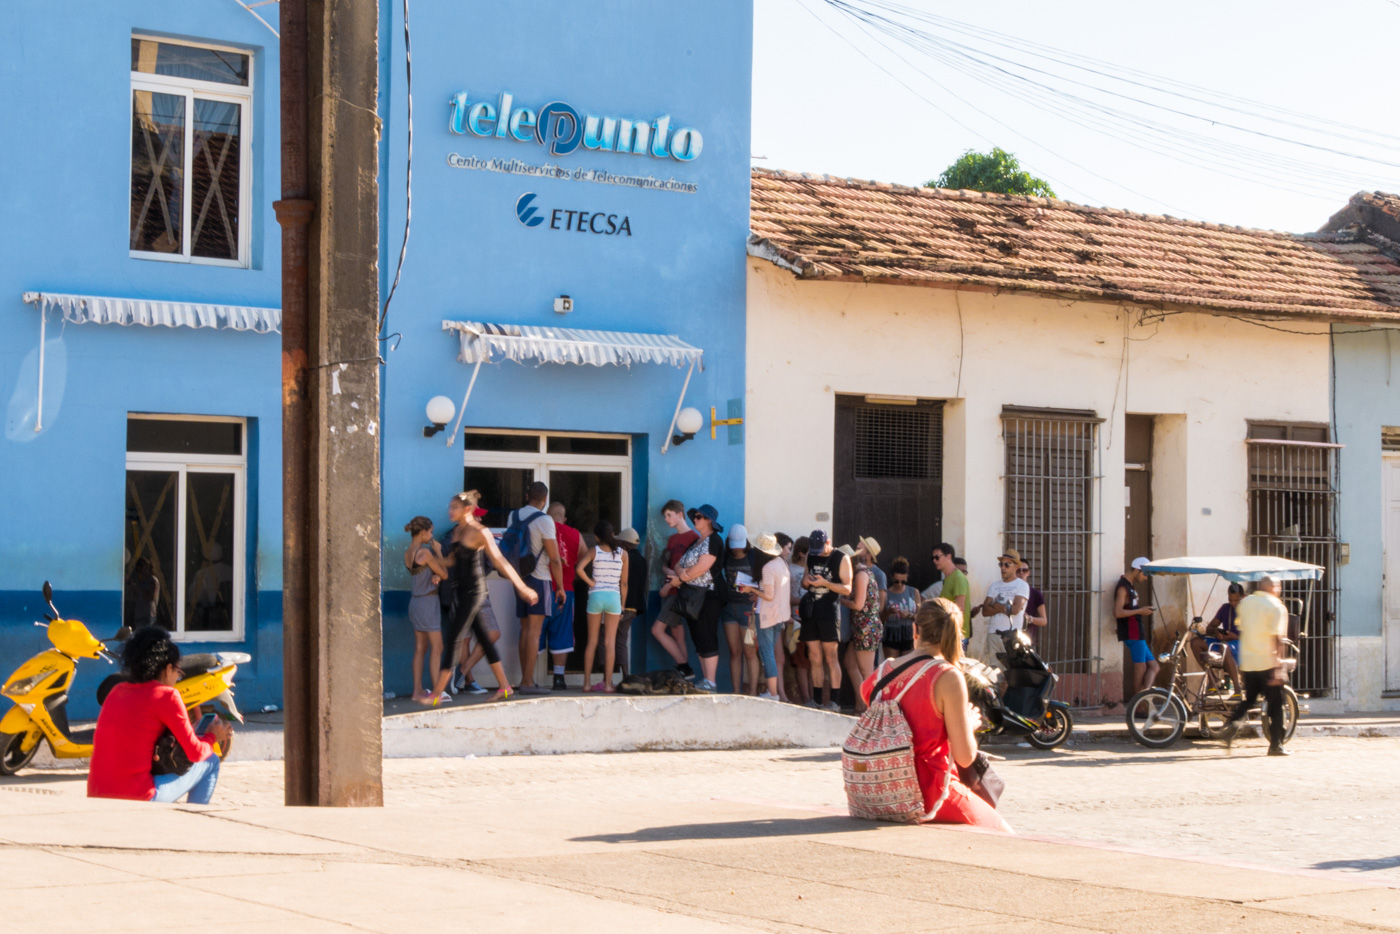 Anstehen für Internetkarten in Trinidad, Kuba